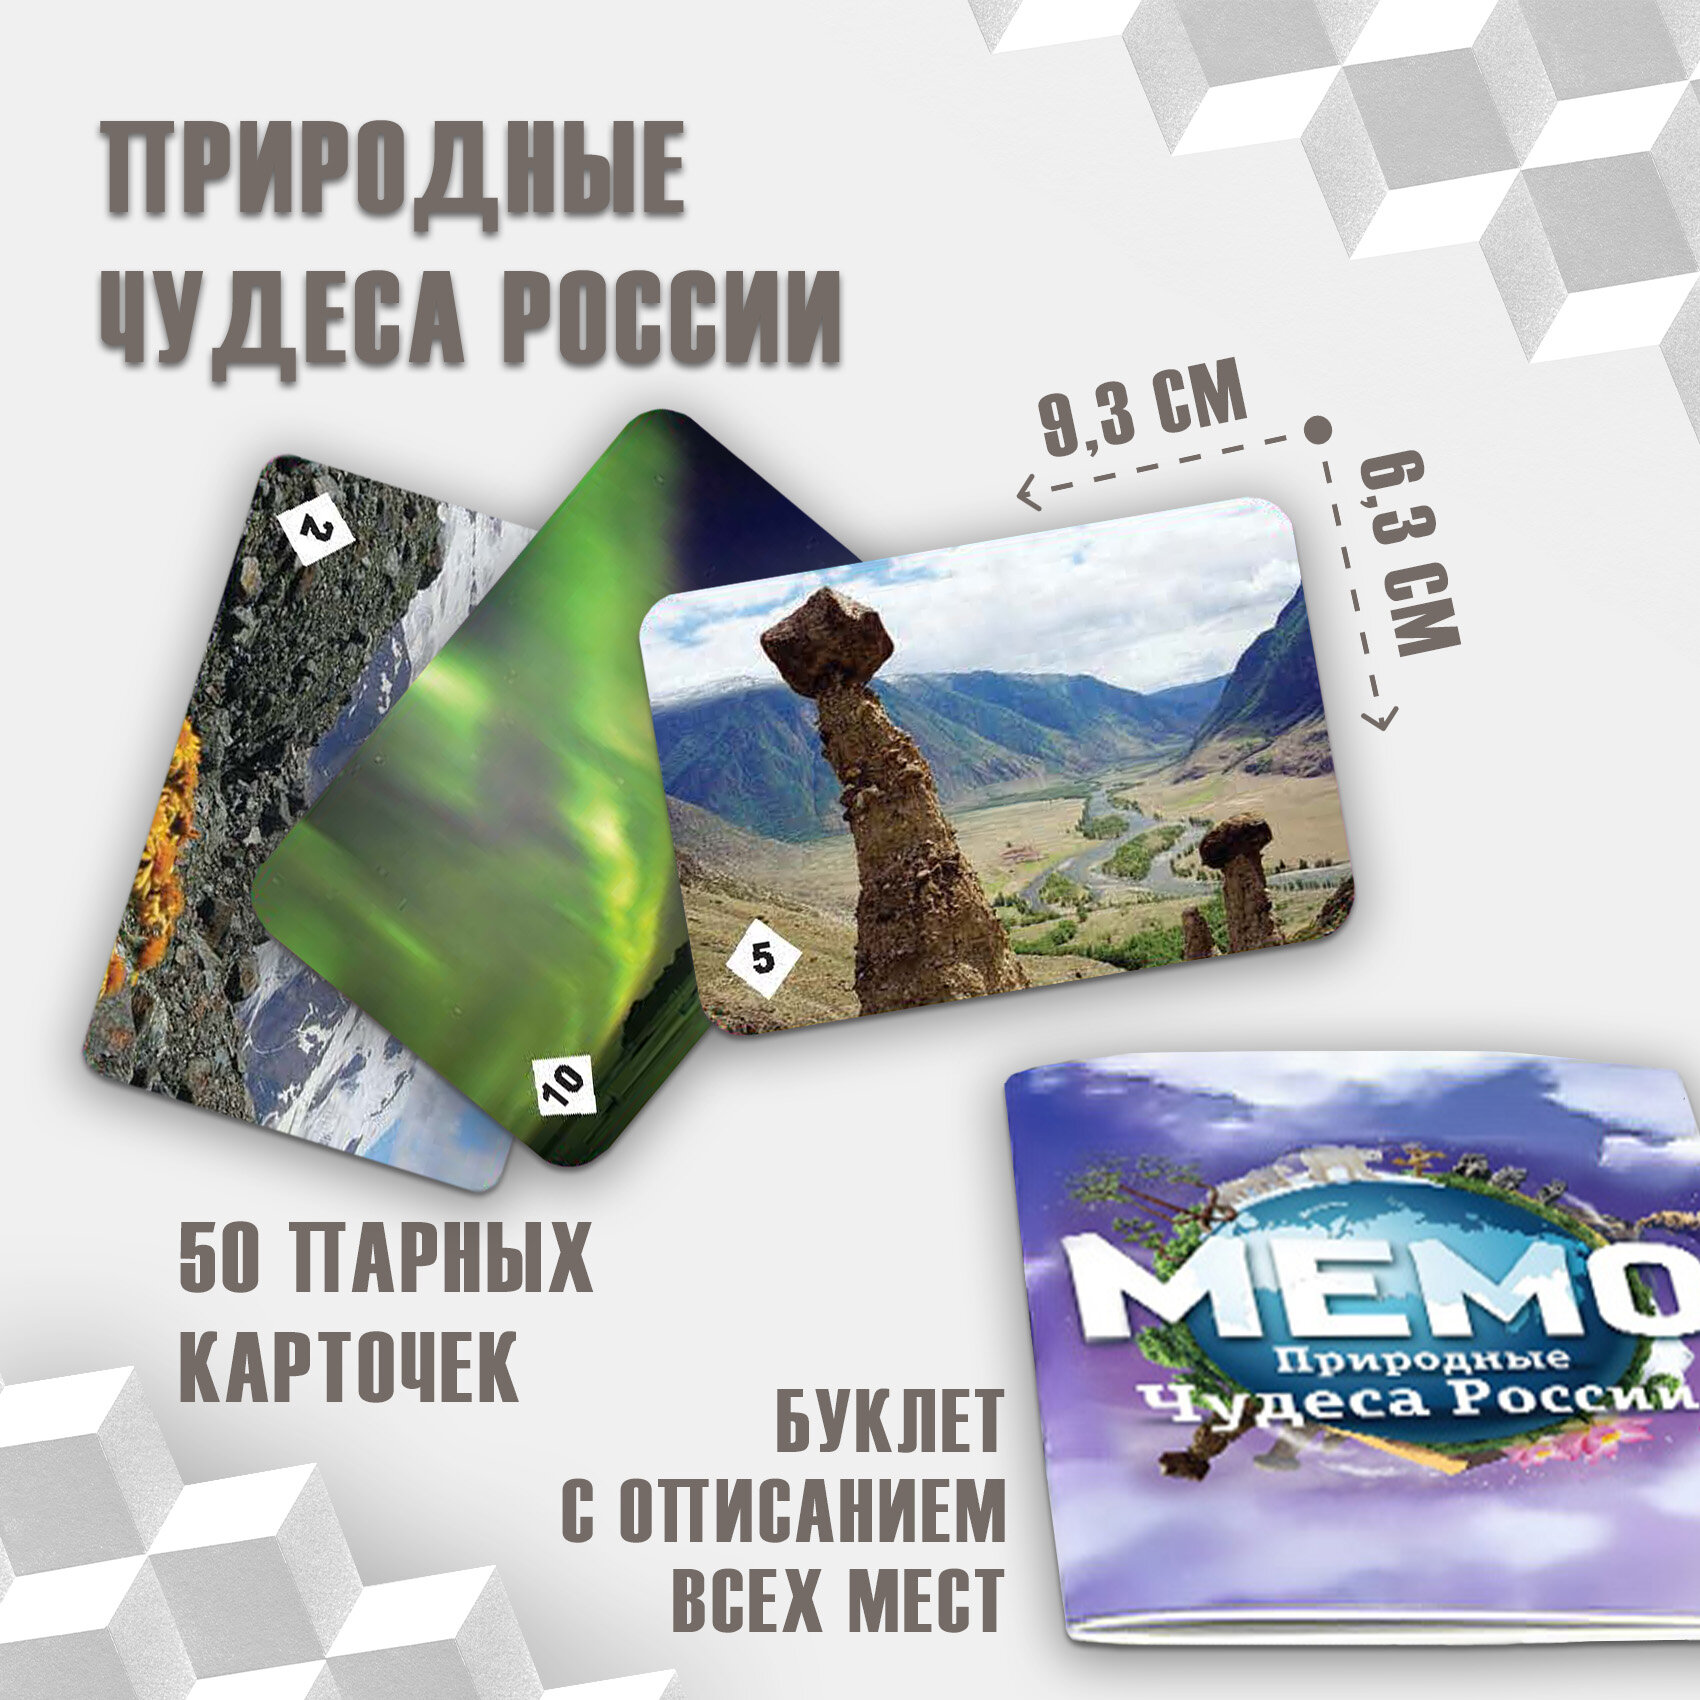 Настольная игра Нескучные игры Мемо Природные чудеса России